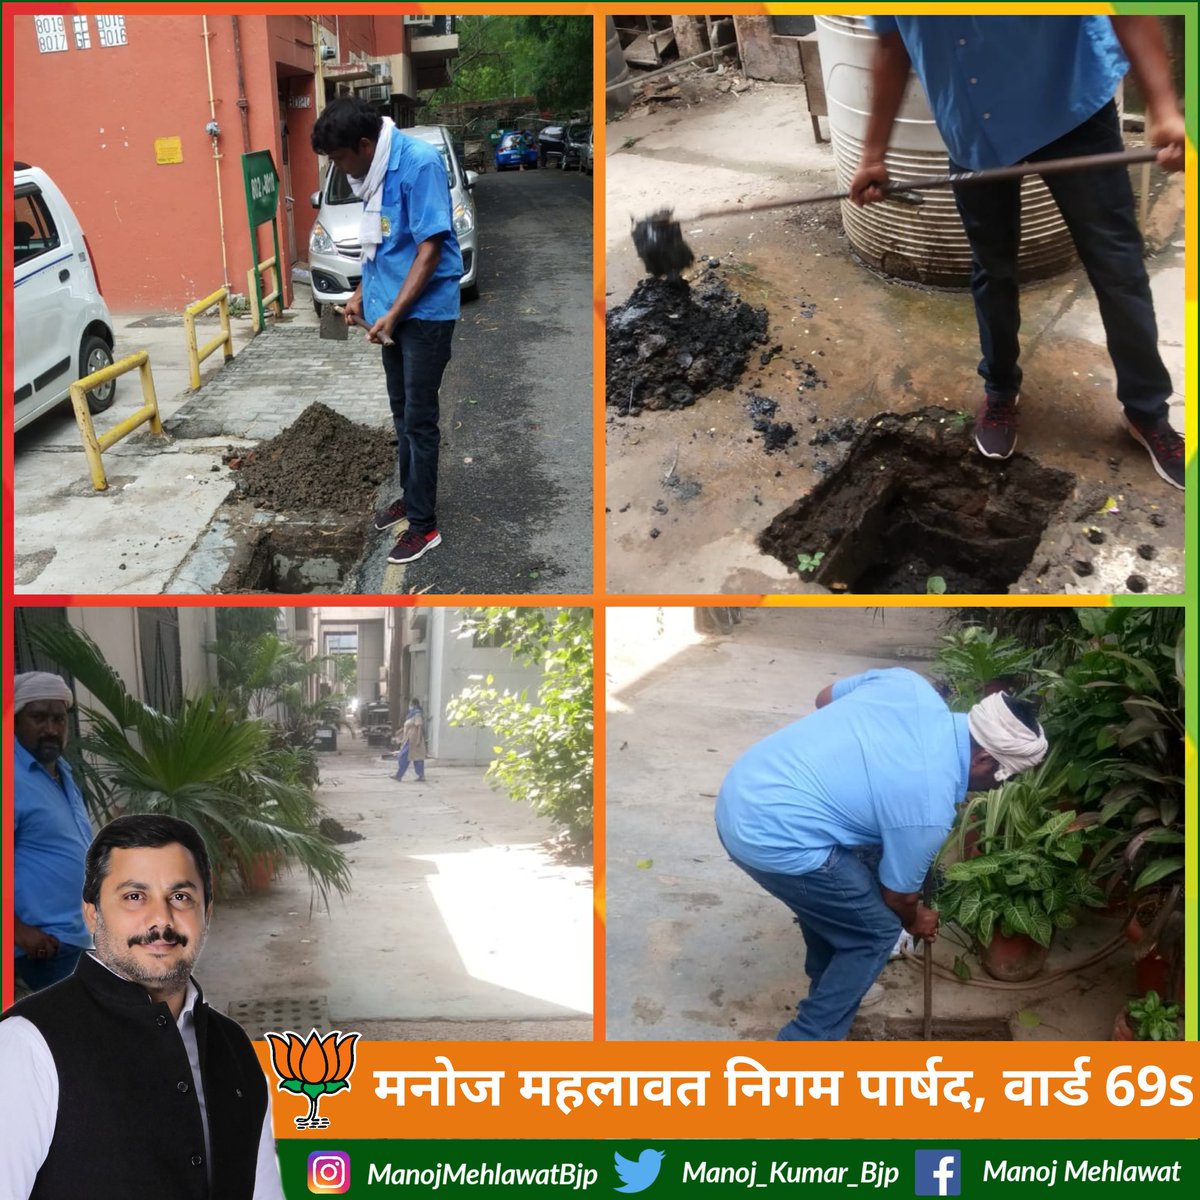 D7/8 वसंत कुंज वार्ड 69 एस में सफाई अभियान चलाया गया। 

#SwachhaBharatAbhiyan 
#CleanIndia